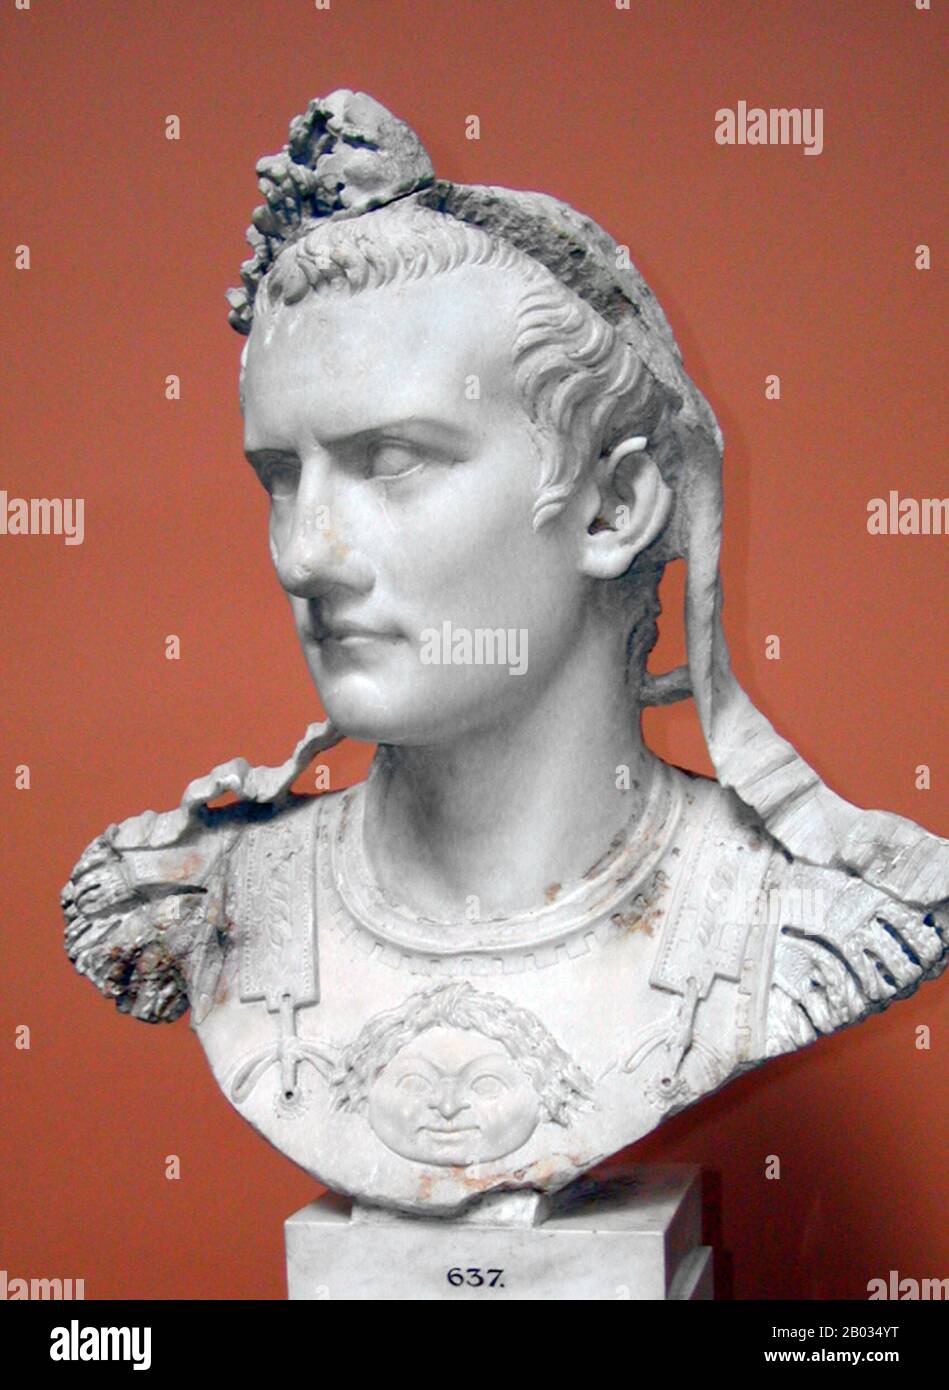 Der gebürtige Gaius Julius Cäsar Germanikus, Caligula war der Neffe und adoptierte Sohn des Kaiser Tiberius, was ihn zur Julio-Claudian-Dynastie machte. Während seiner Feldzüge in Germanien verdiente er sich den Spitznamen "Caligula" (kleiner Lotsstiefel), während er seinen Vater Germanikus begleitete. Seine Mutter Agrippina, die ältere, verstrickte sich in eine tödliche Fehde mit Kaiser Tiberius, die zur Zerstörung ihrer Familie und zum Verlassen Caligula führte, die einzige männliche Überlebende. Nach Tiberius Tod im Jahr 37 v. Chr. trat Caligula die Nachfolge seines Großonkels als Kaiser an. Überlieferte Quellen über seine Regierungszeit sind nur wenige, aber weit entfernt Stockfoto